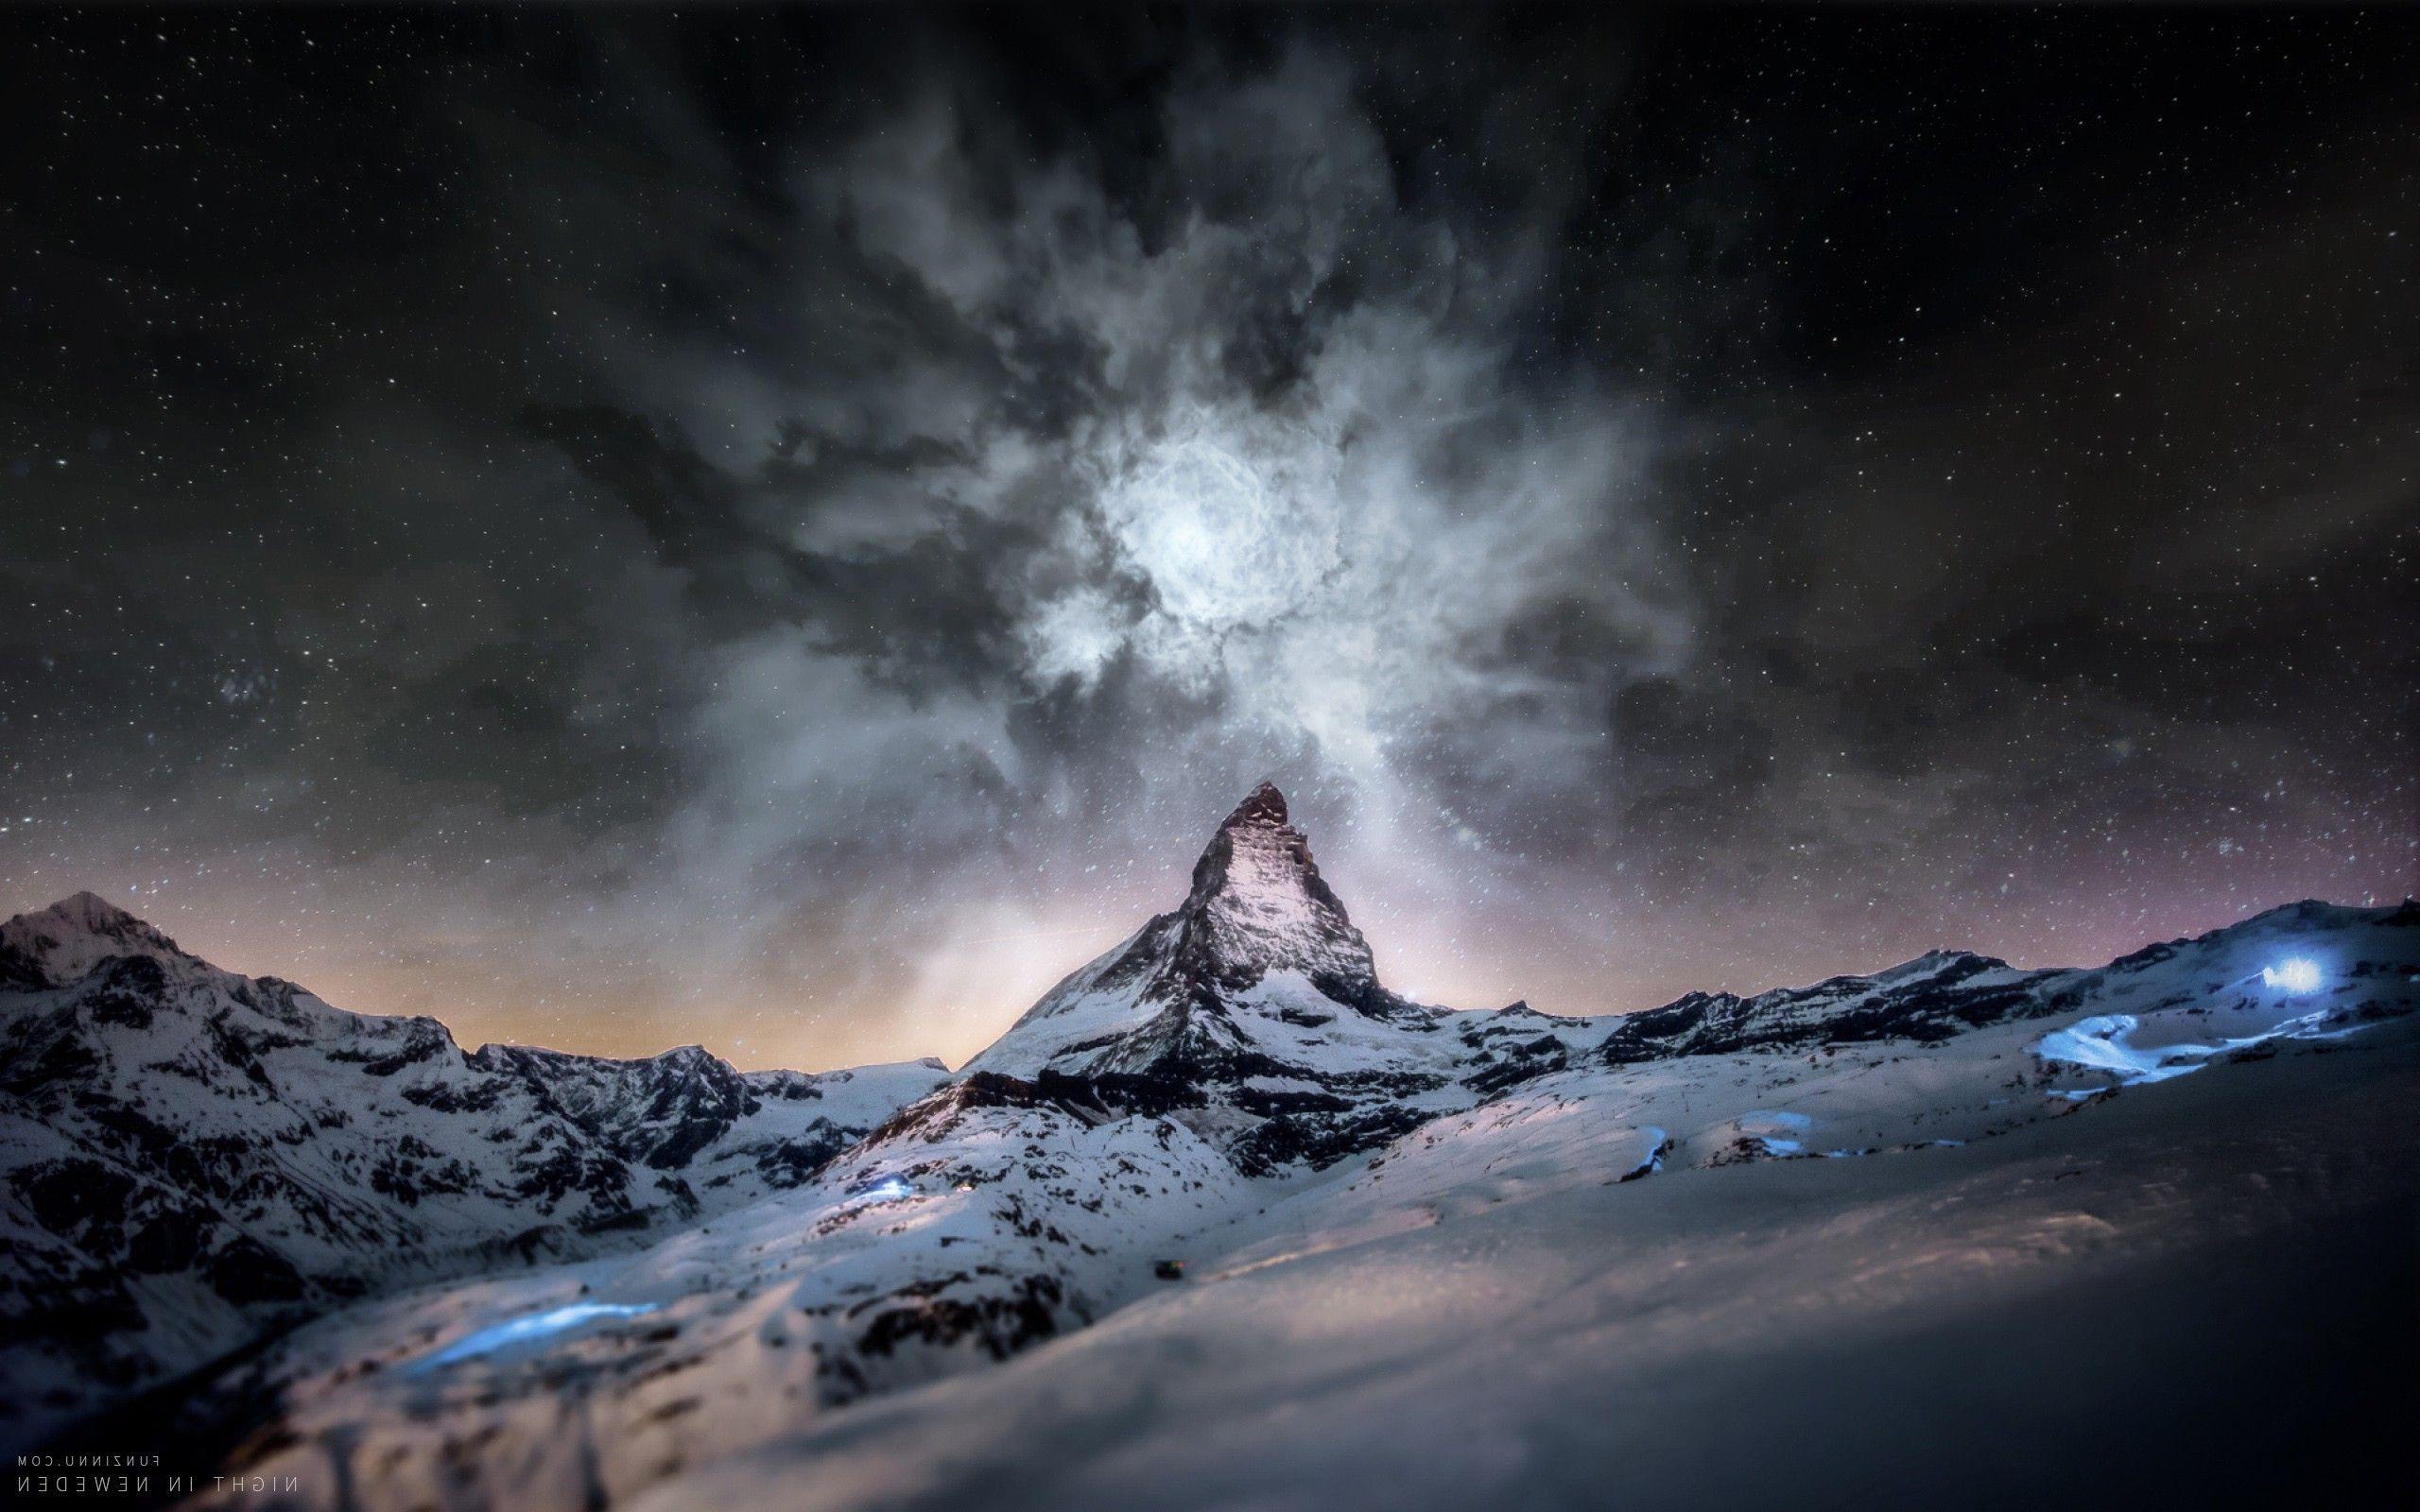 Matterhorn Wallpaper, Top Ranked Matterhorn Wallpaper, PC